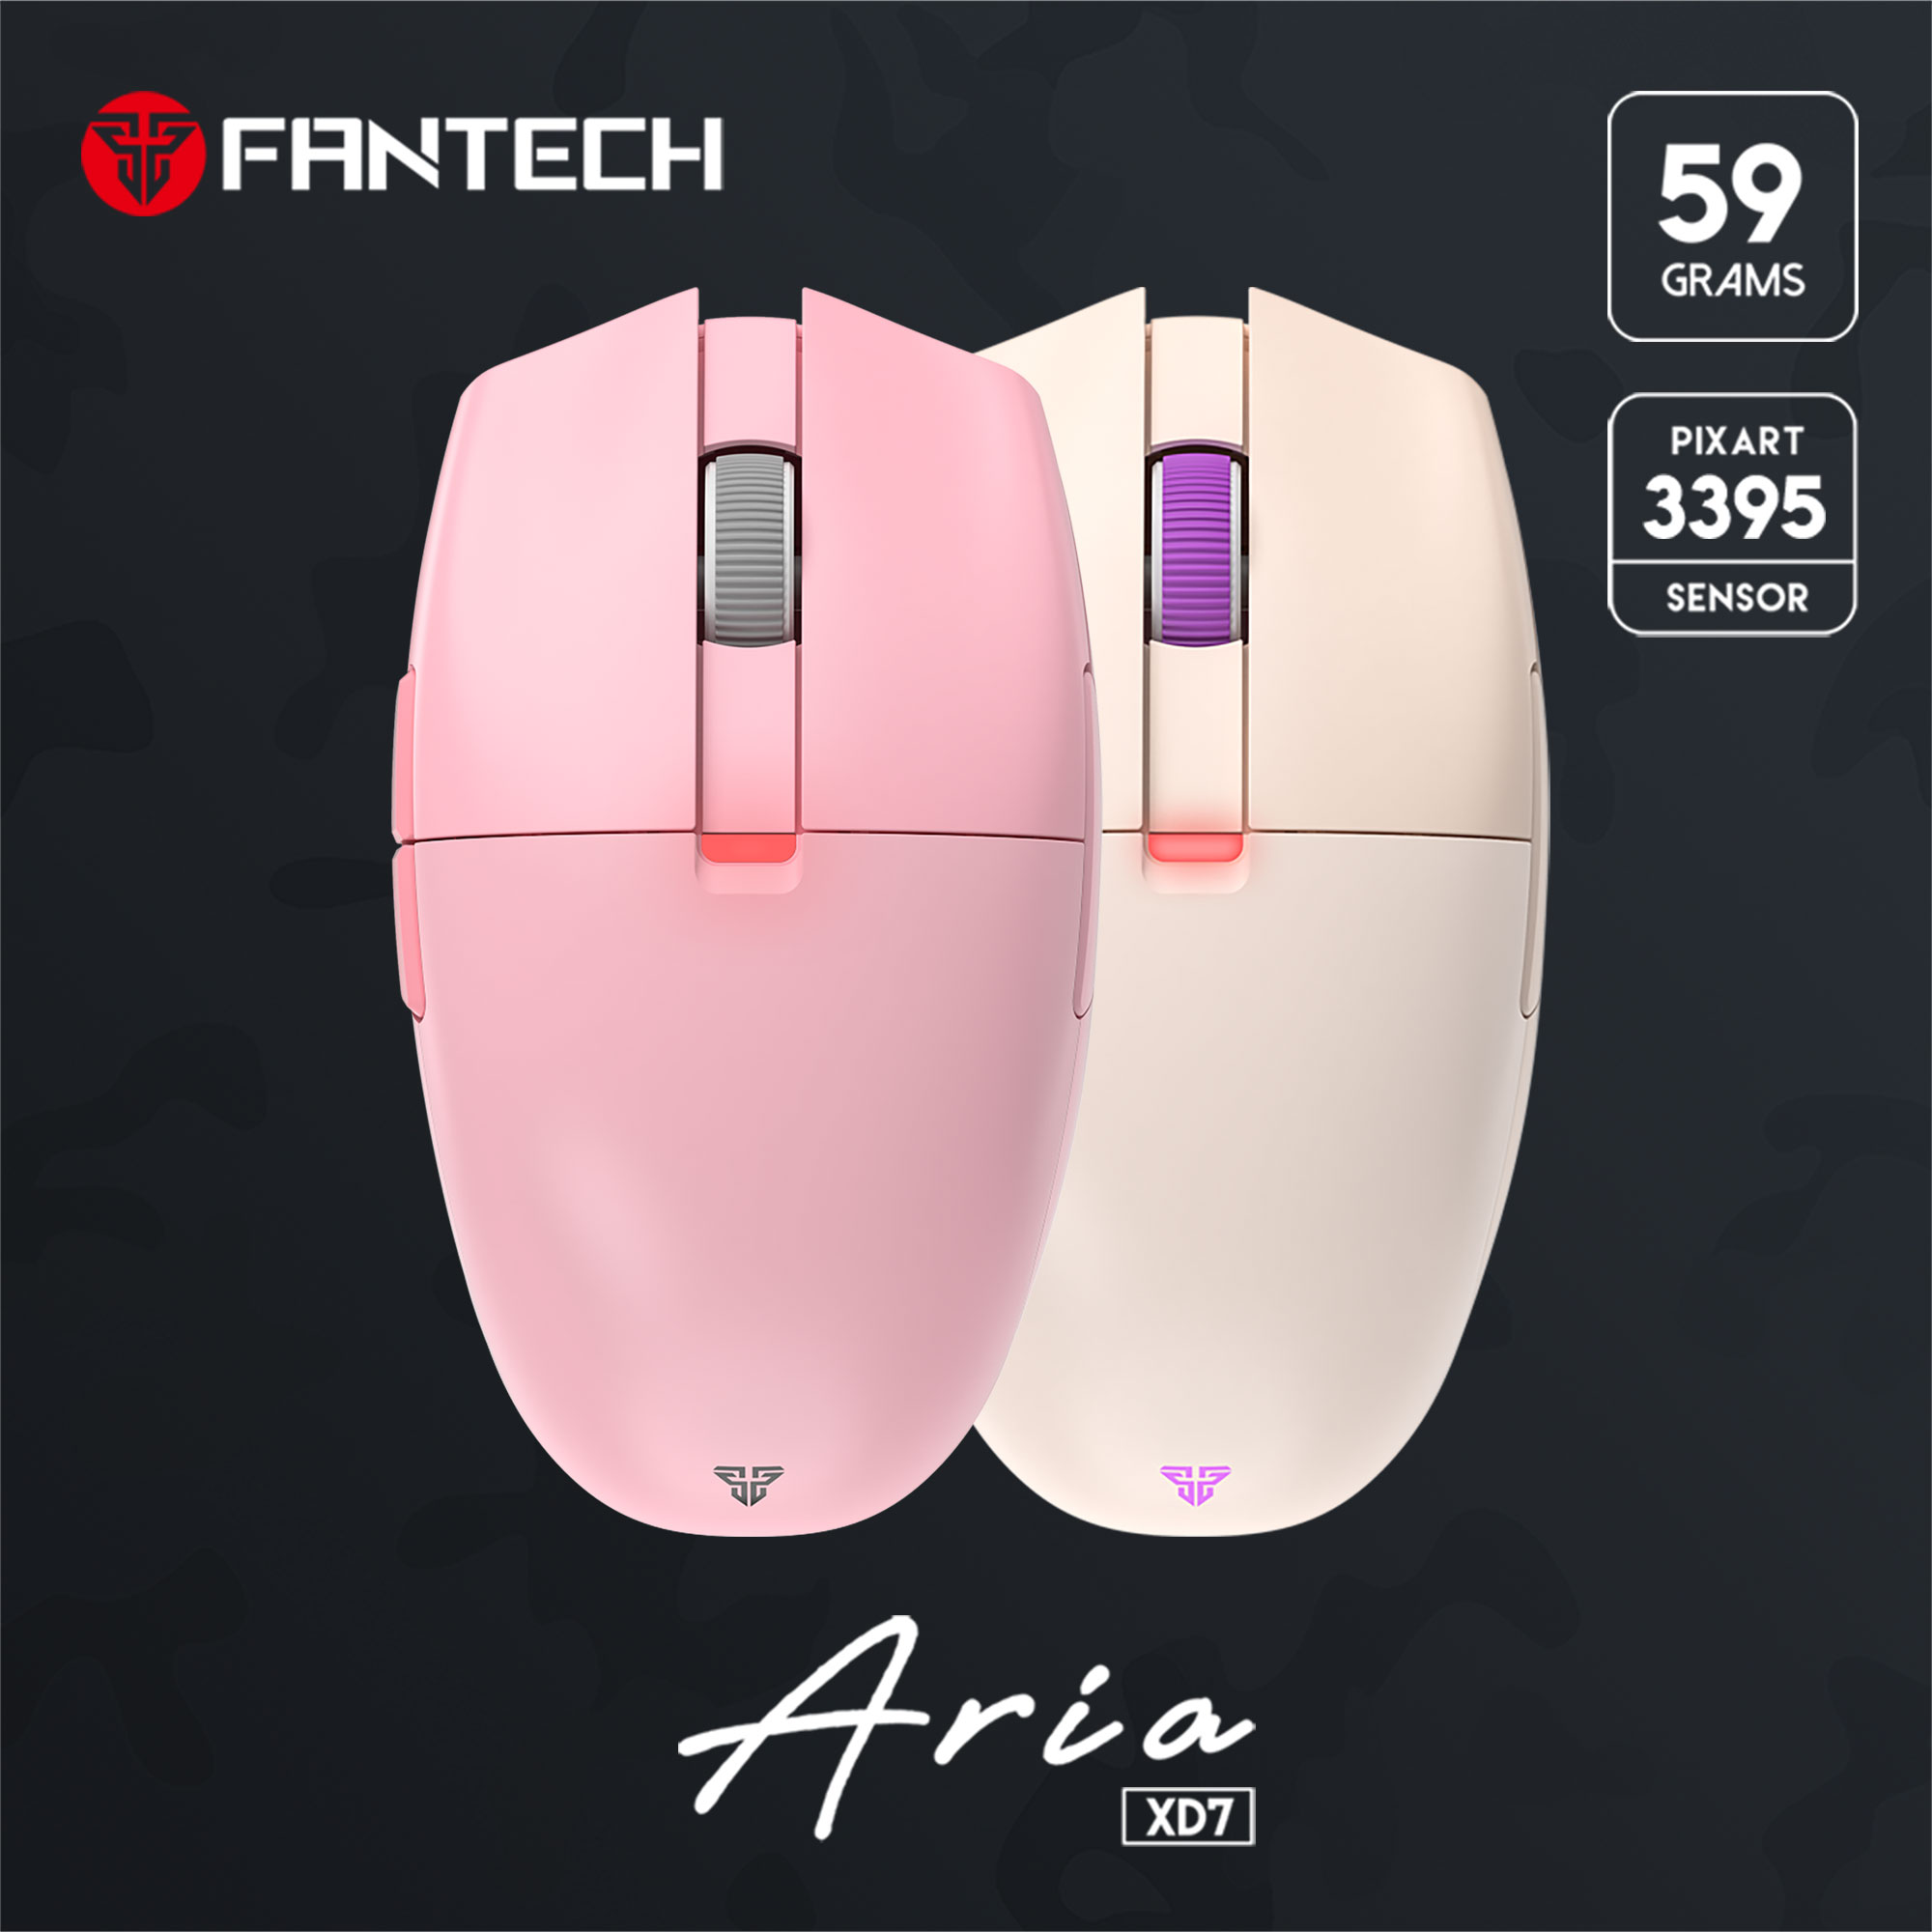 Aria XD7 - Fantech - ワイヤレスゲーミングマウス - 株式会社アーキサイト